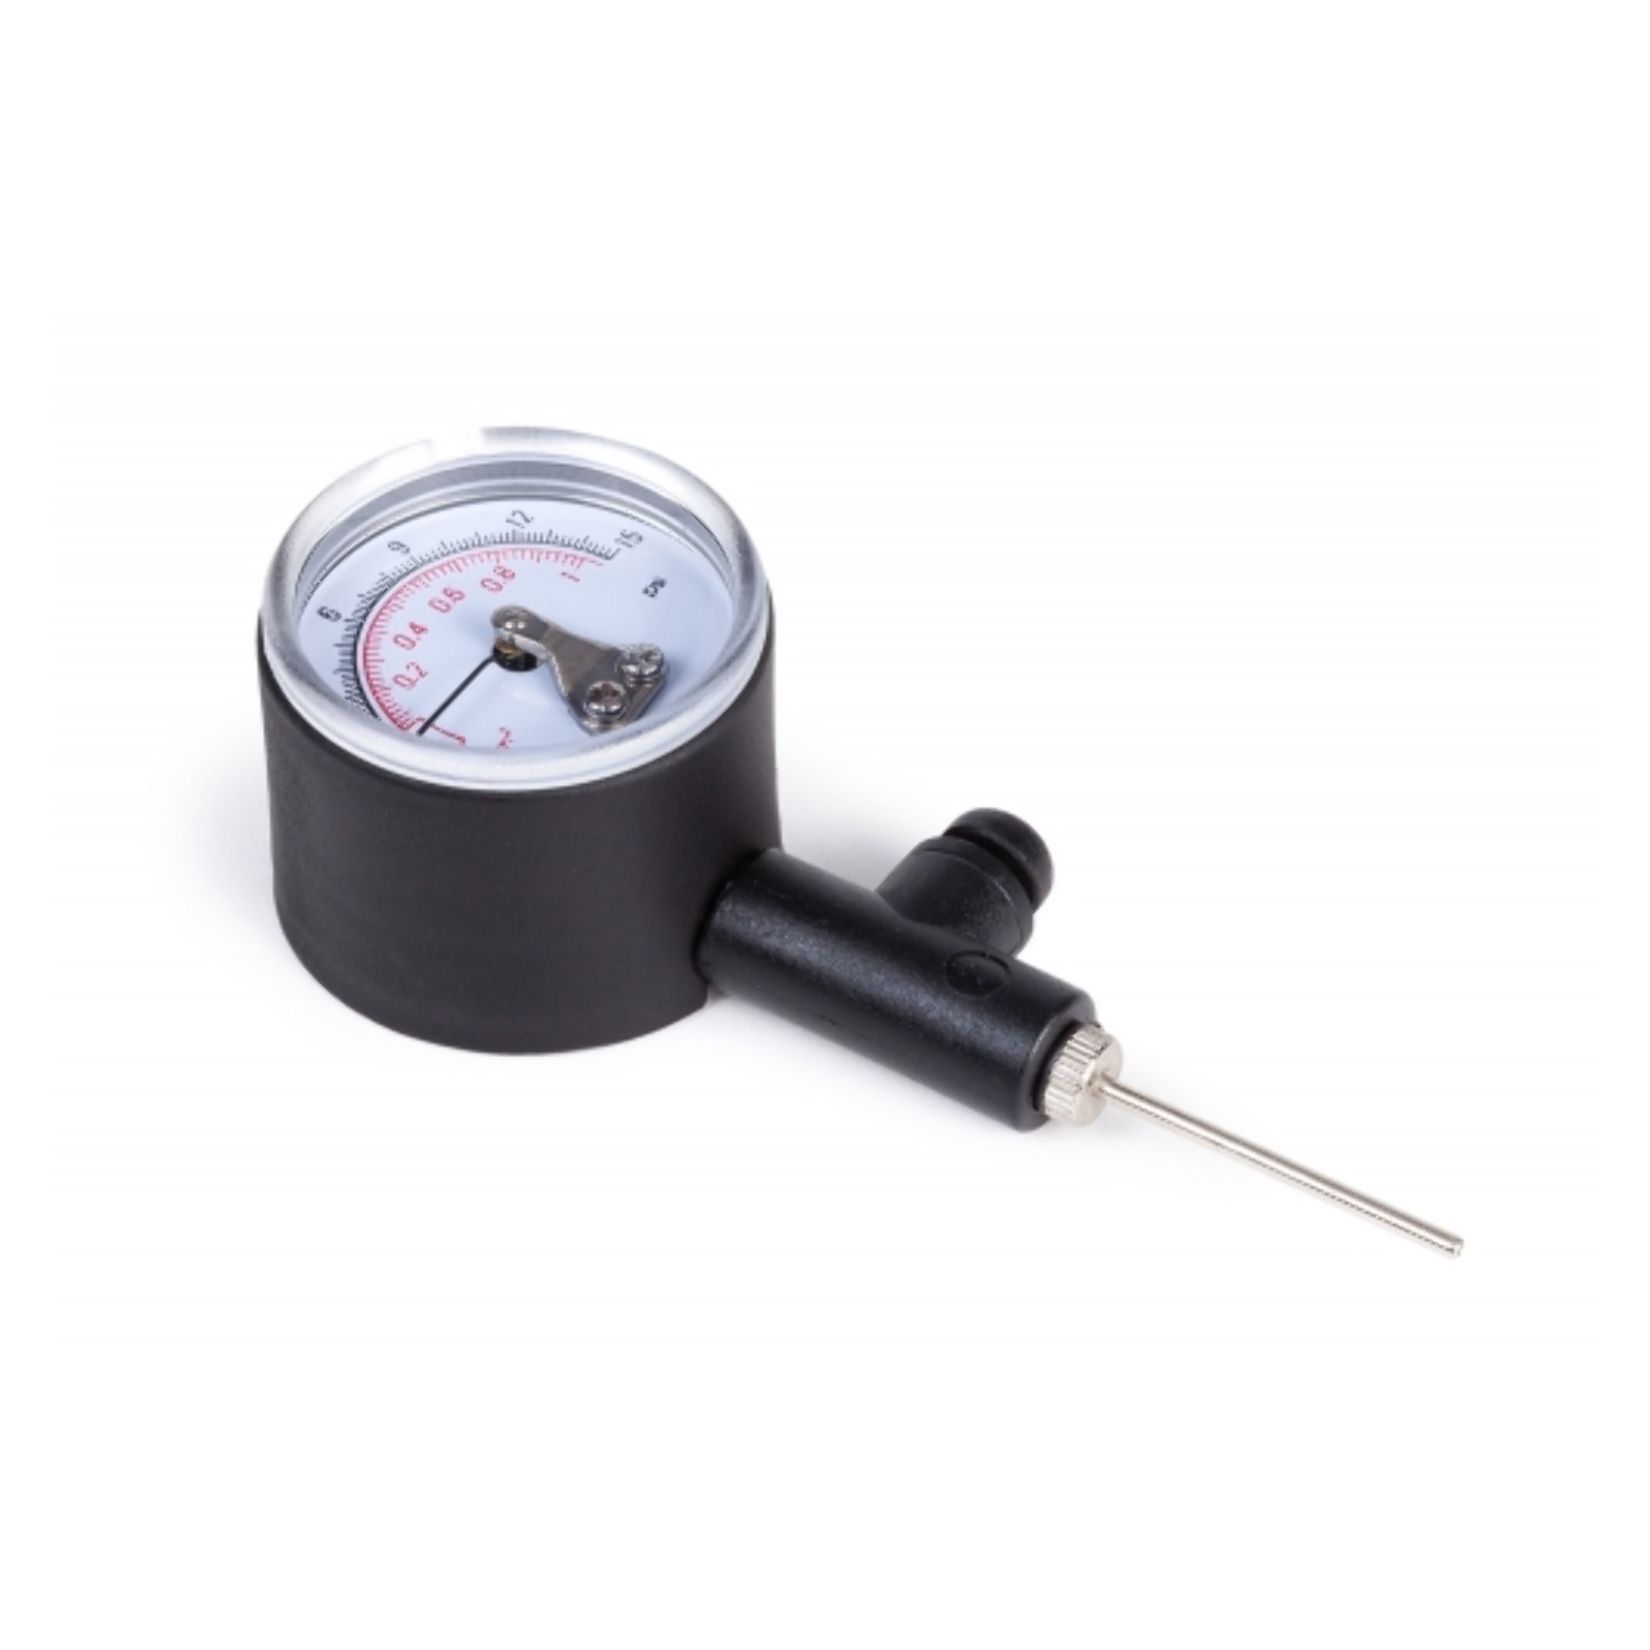 Samba Ball pressure gauge